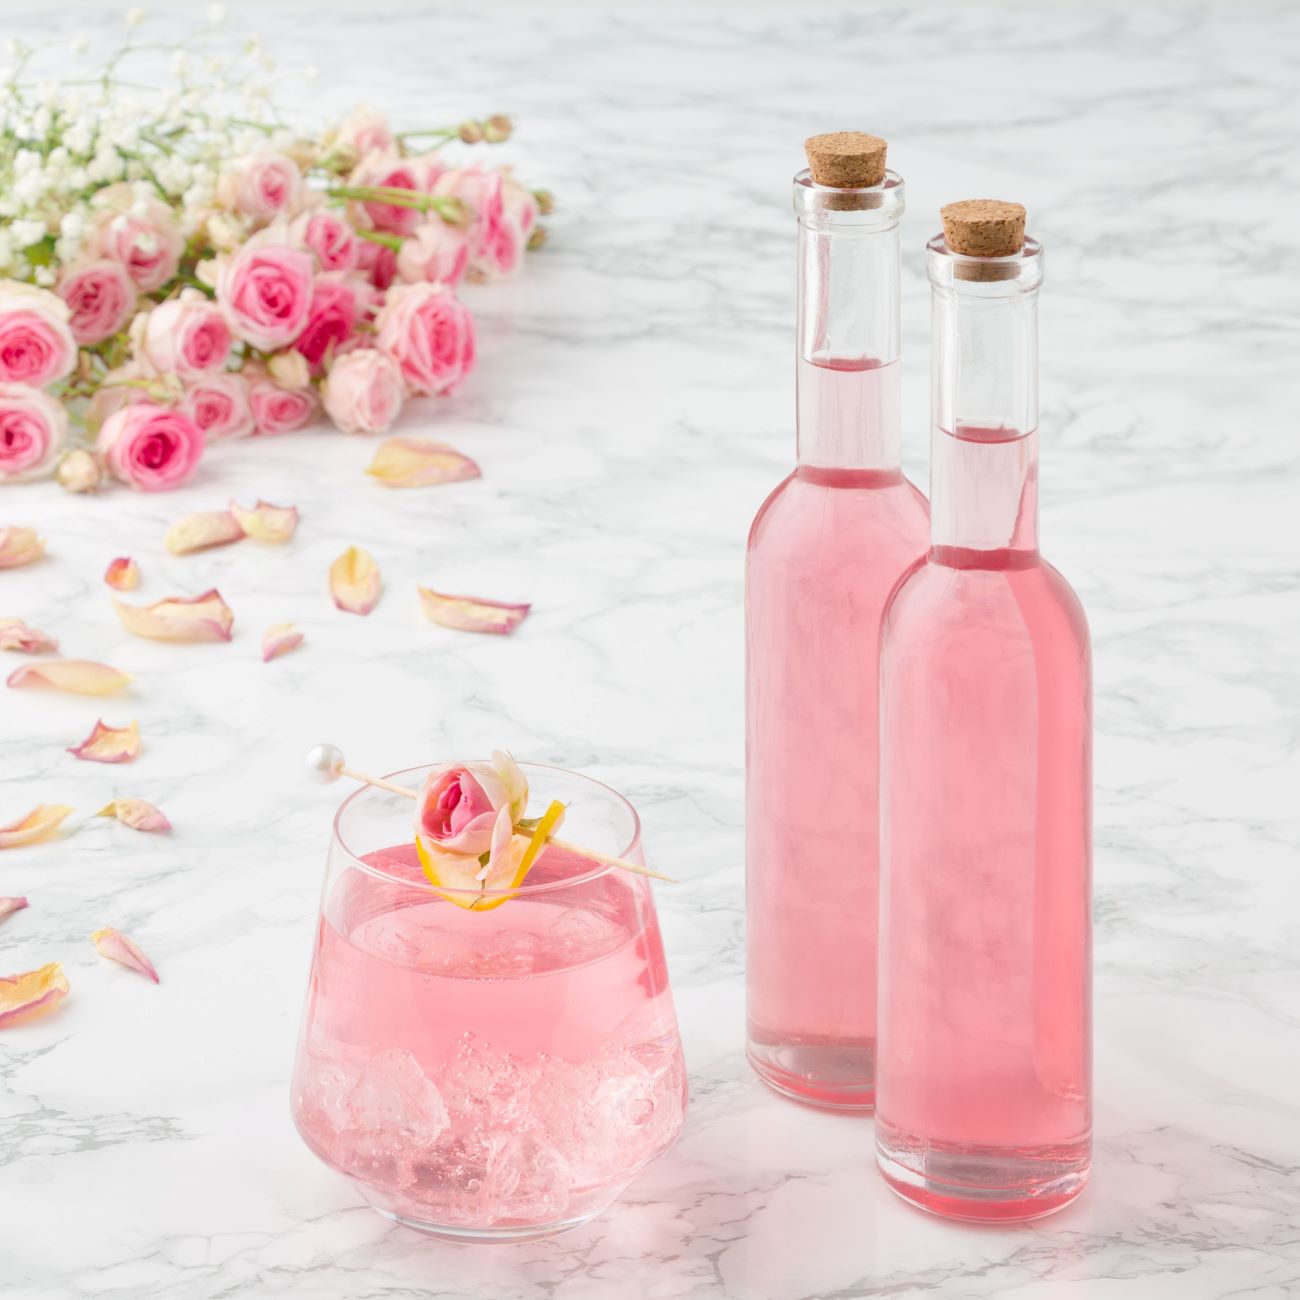 Syrop różany prezentowany jest w dwóch małych buteleczkach i szklance z kostkami lodu.